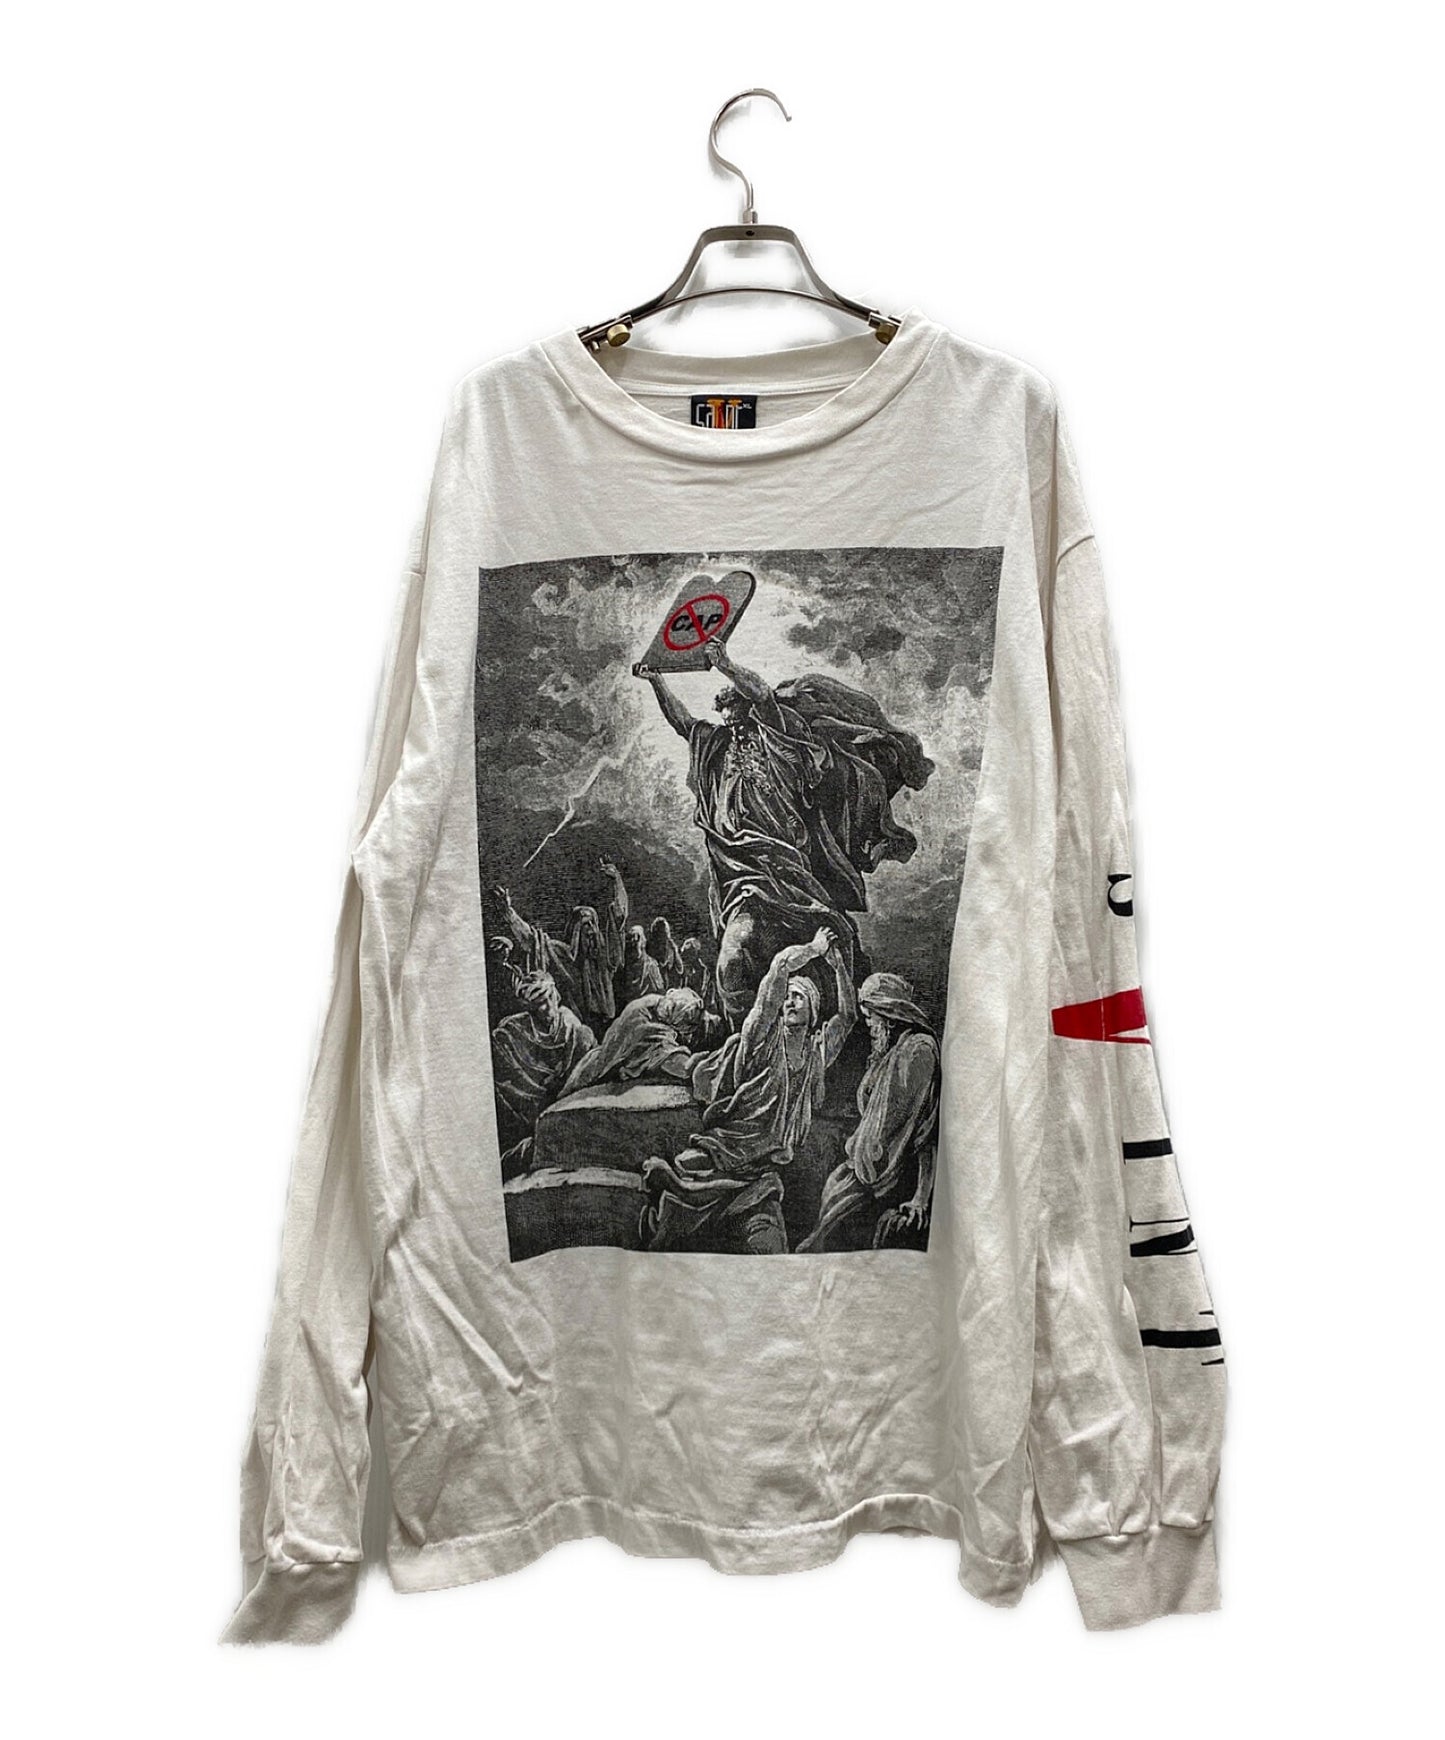 Saint Michael vlone LS t-shirt MARIA ロンT-